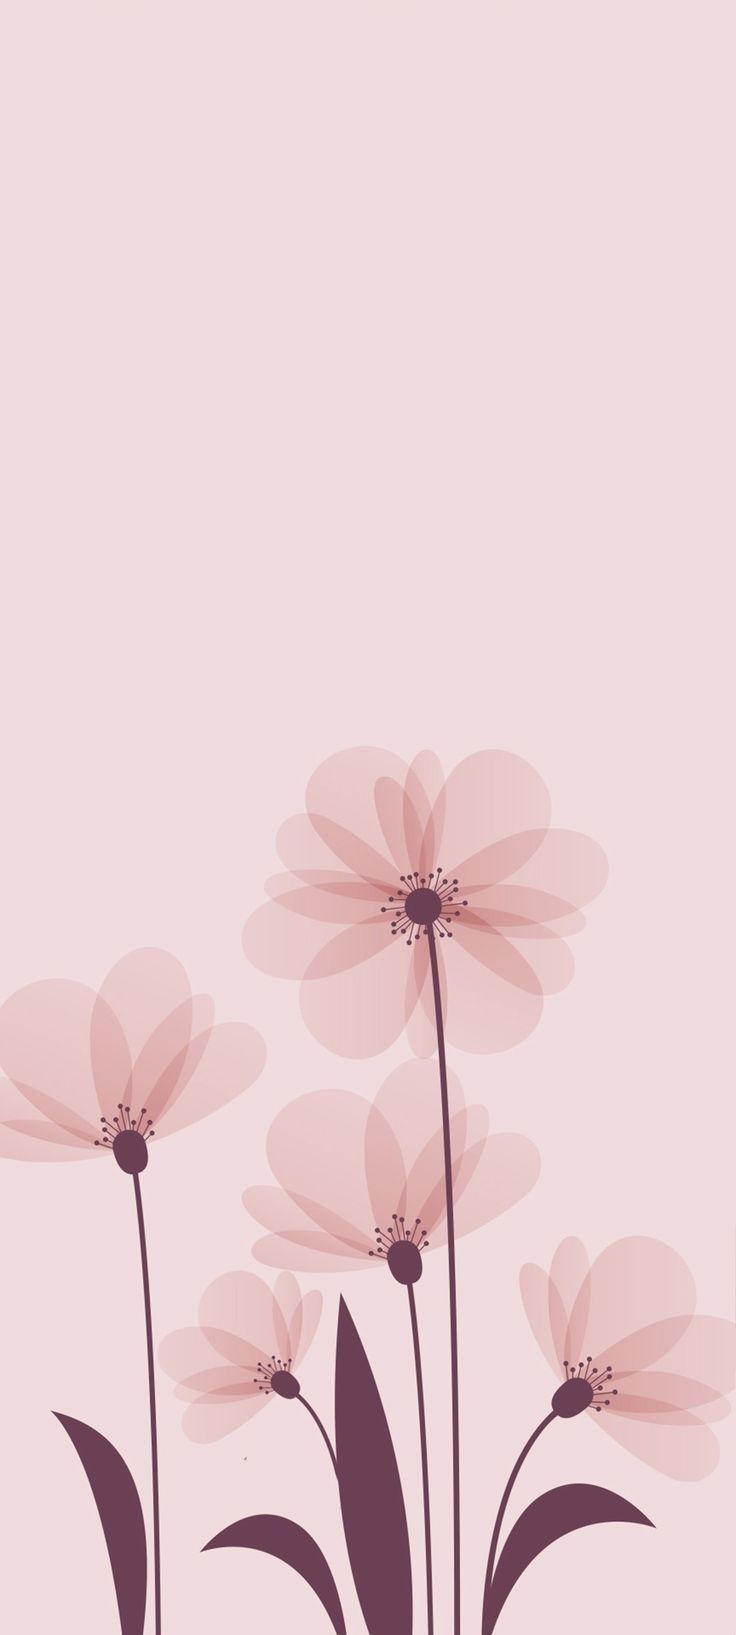 50 Floral iPhone Wallpaper  WallpaperSafari